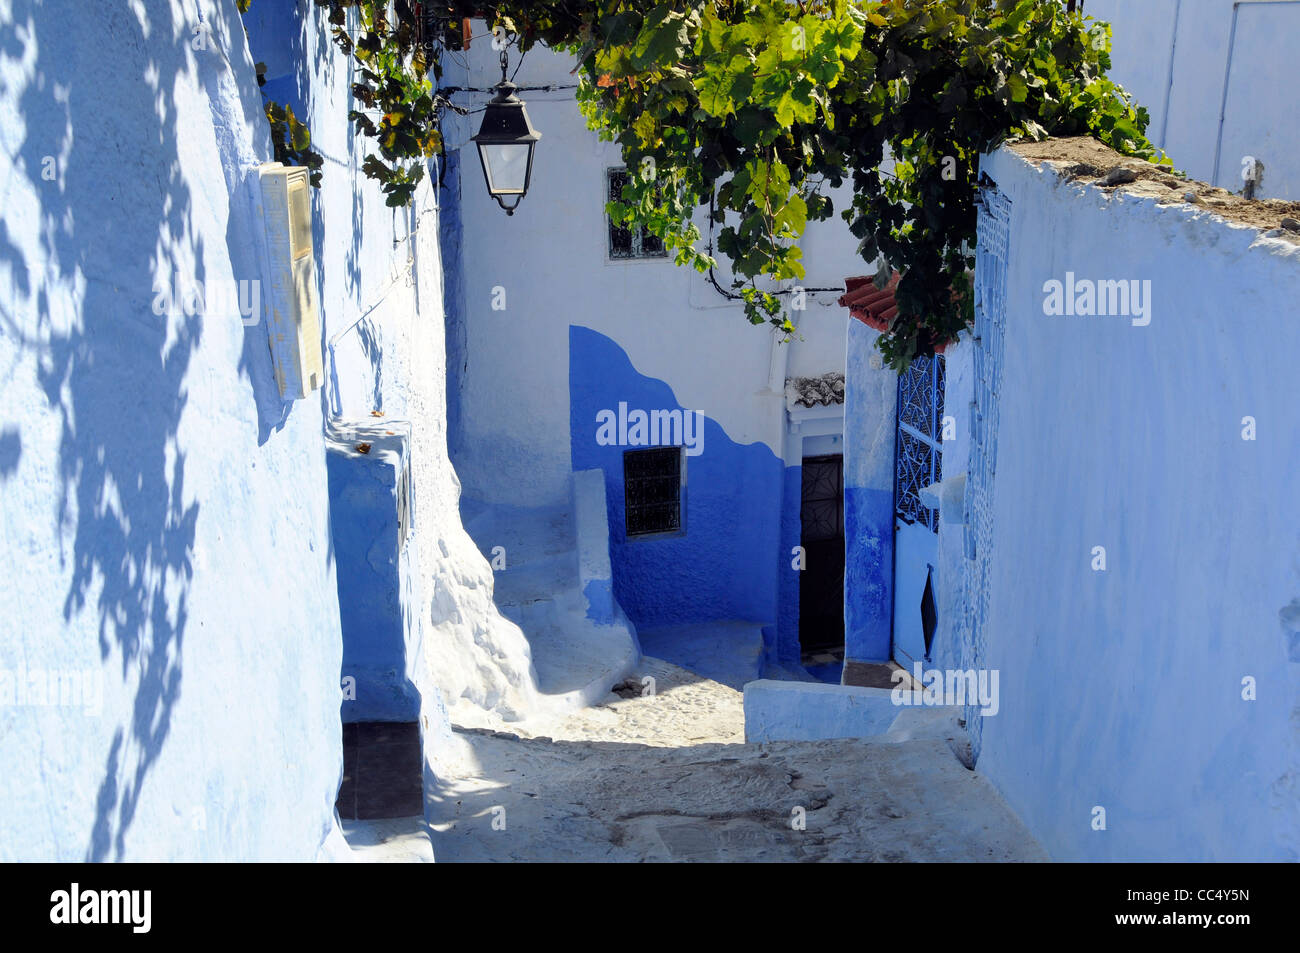 Scène de rue à Chefchaouen, également connu sous le nom de Chaouen, un petit village avec des murs peints en blanc et bleu dans le nord du Maroc. Banque D'Images